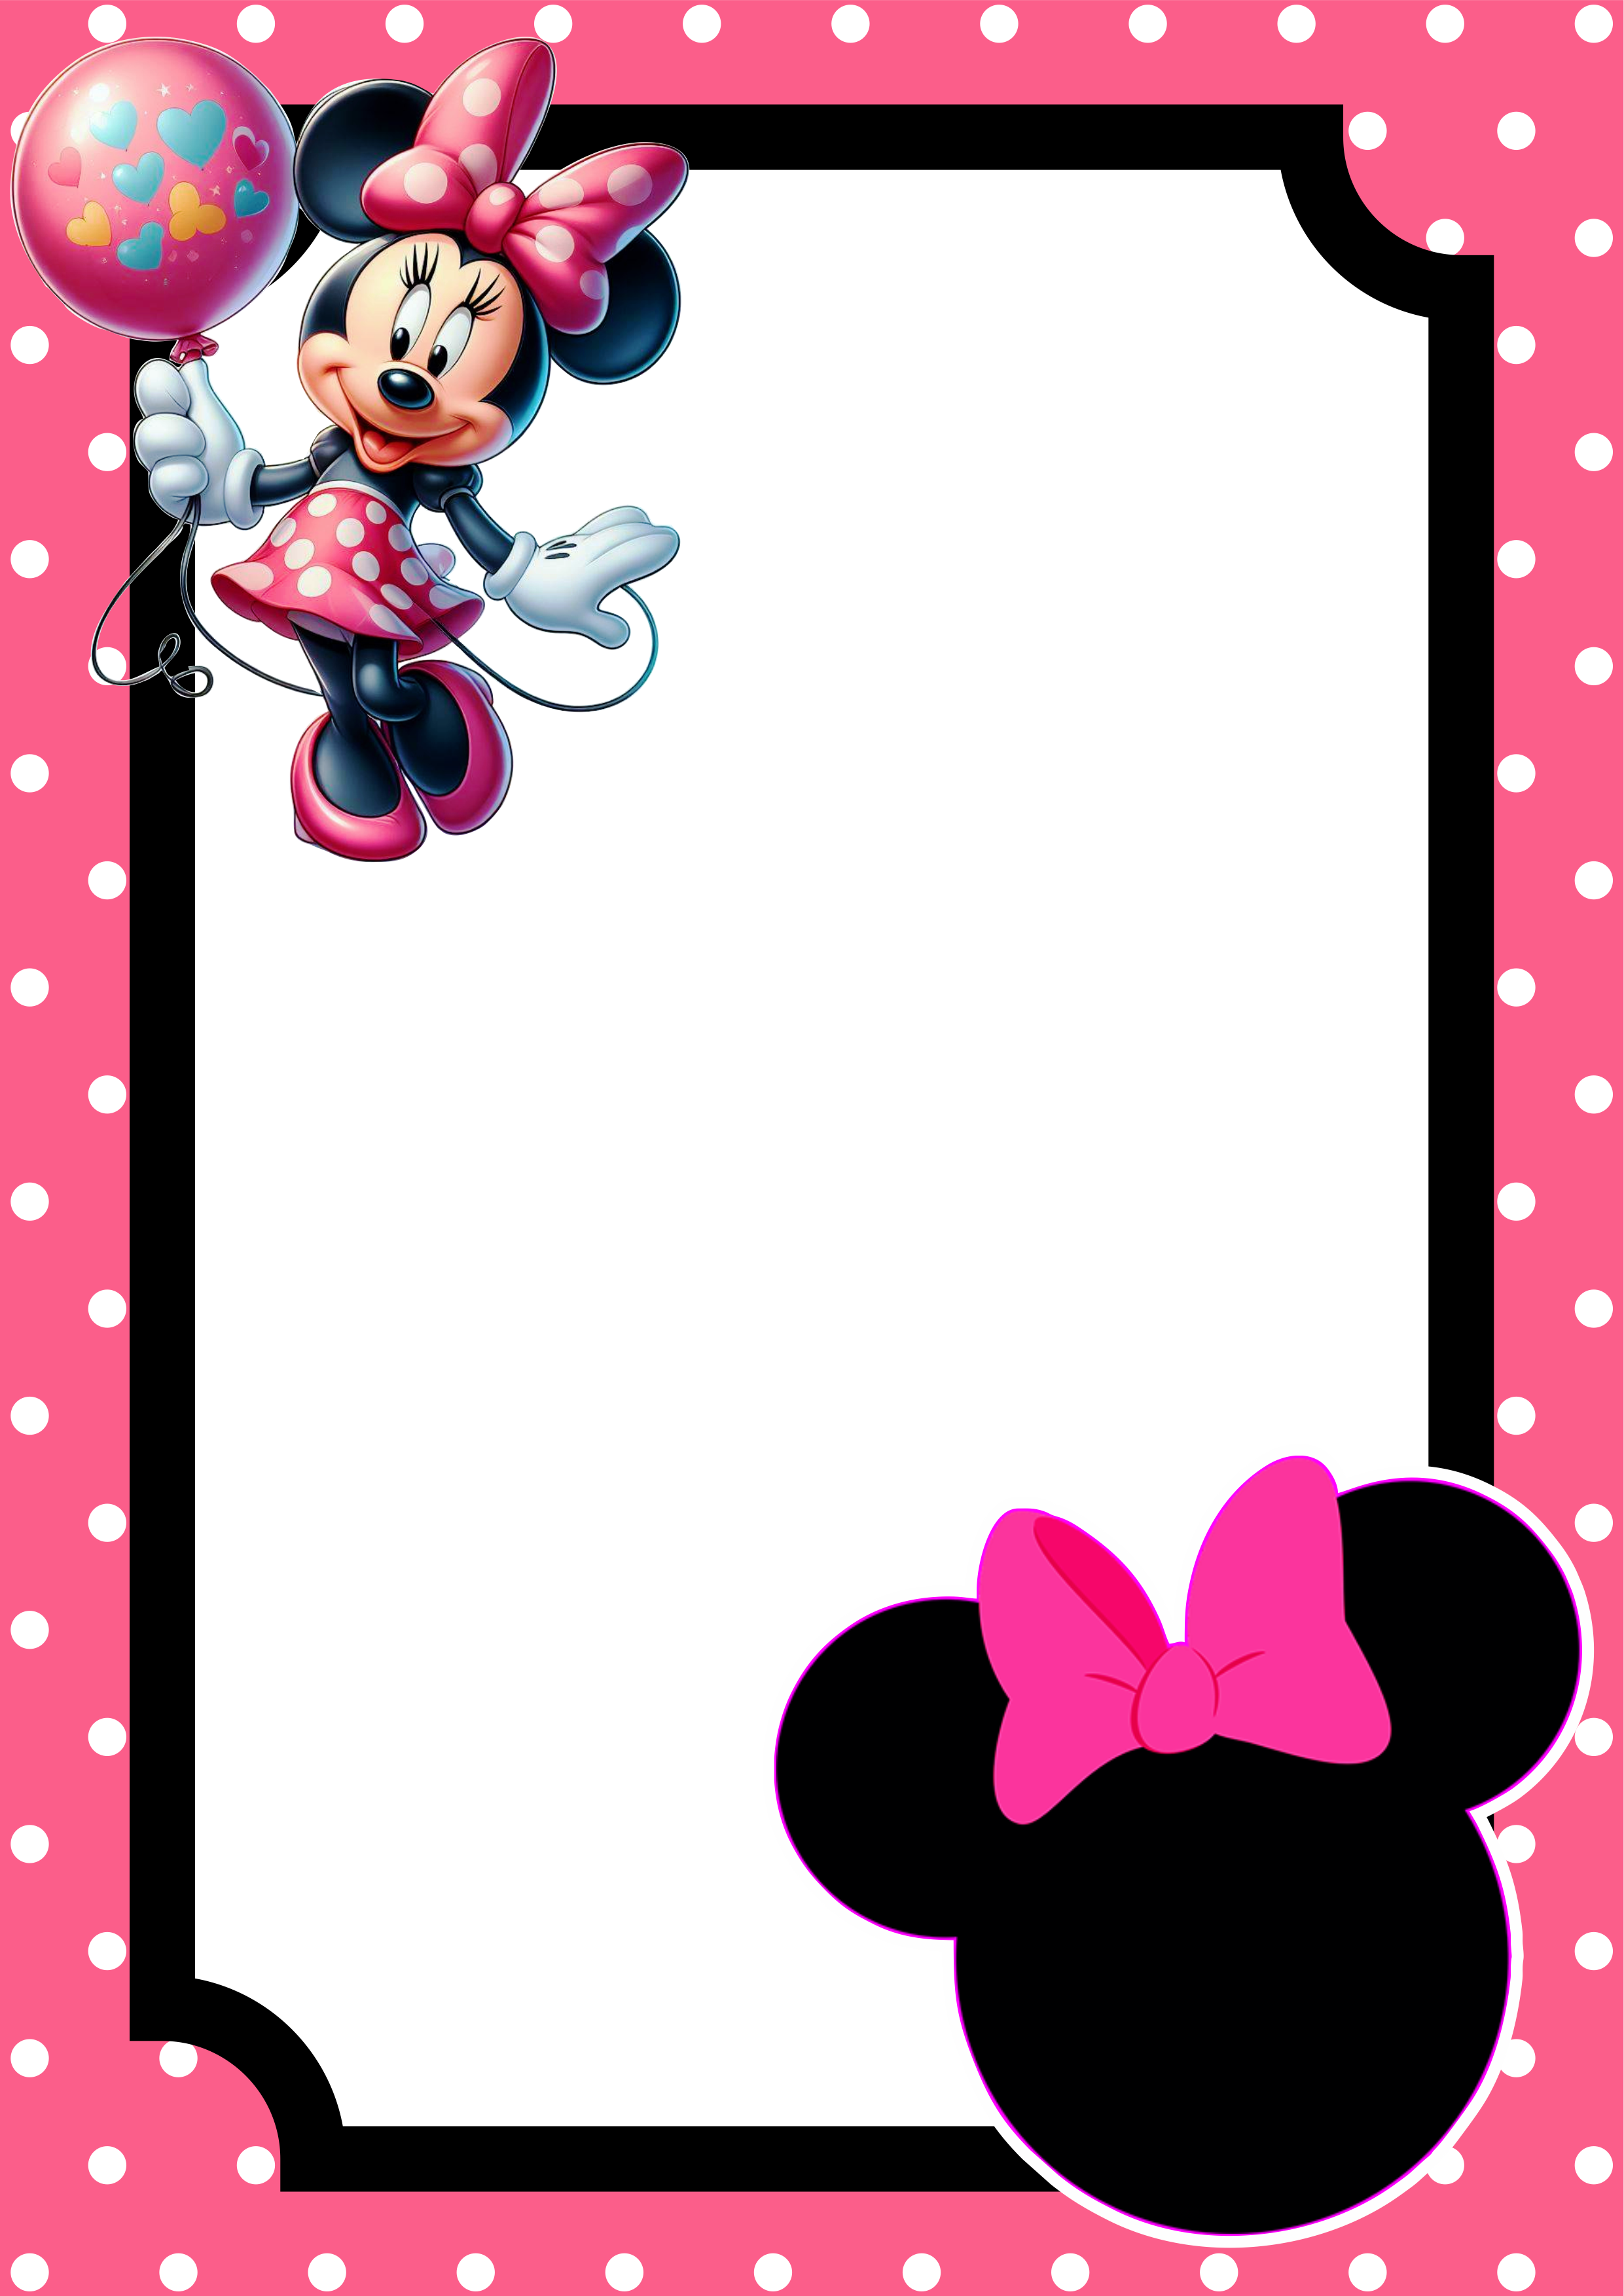 Convite virtual Minnie rosa molde pronto para editar e imprimir festa aniversário infantil Disney renda extra png